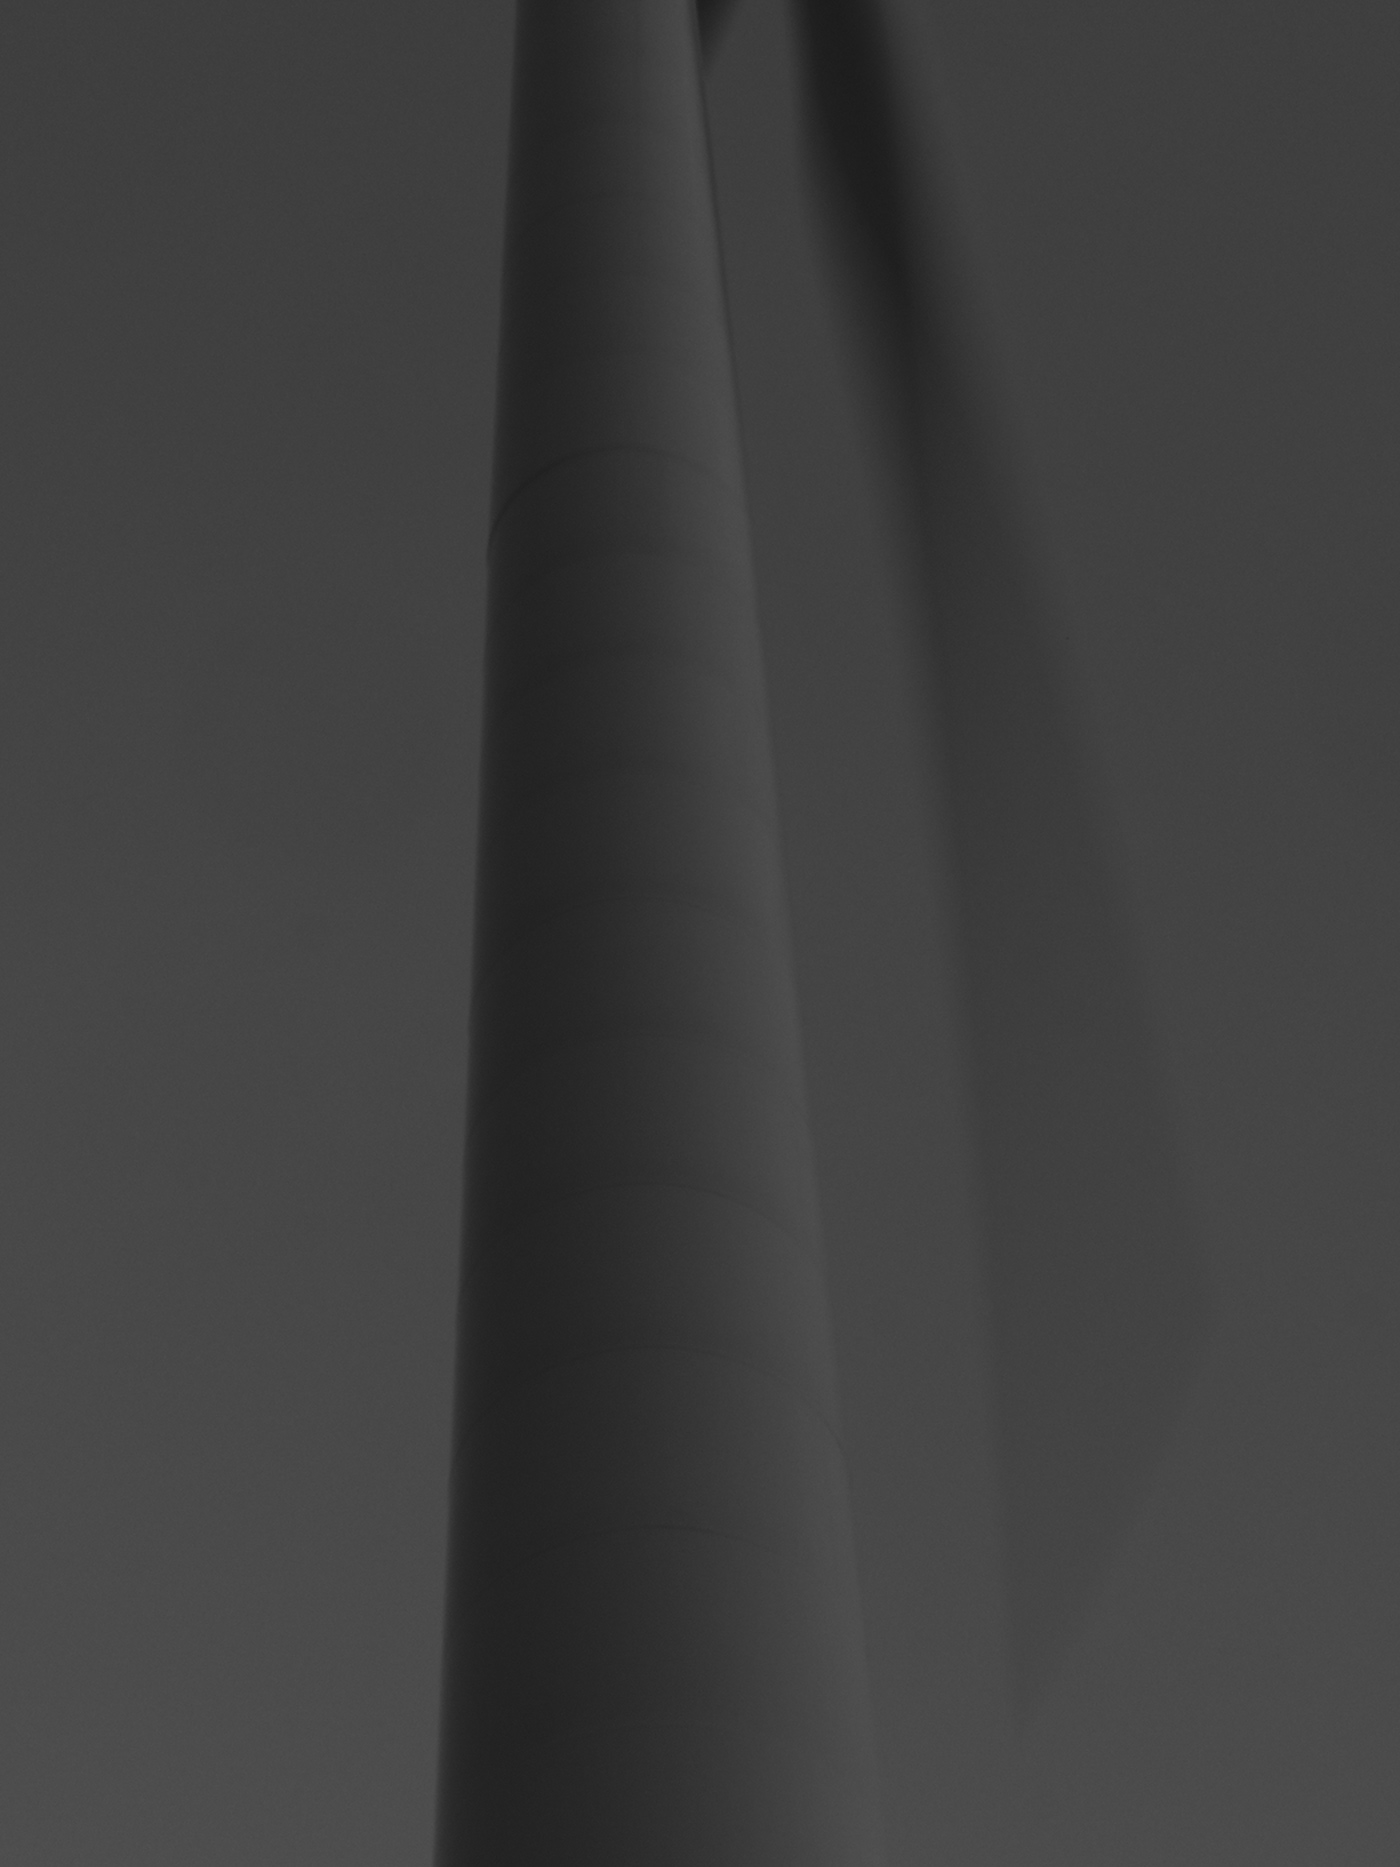 monochrome photografy architecture aerogenerador Blanc i negre moli de vent Wind Turbine catalunya